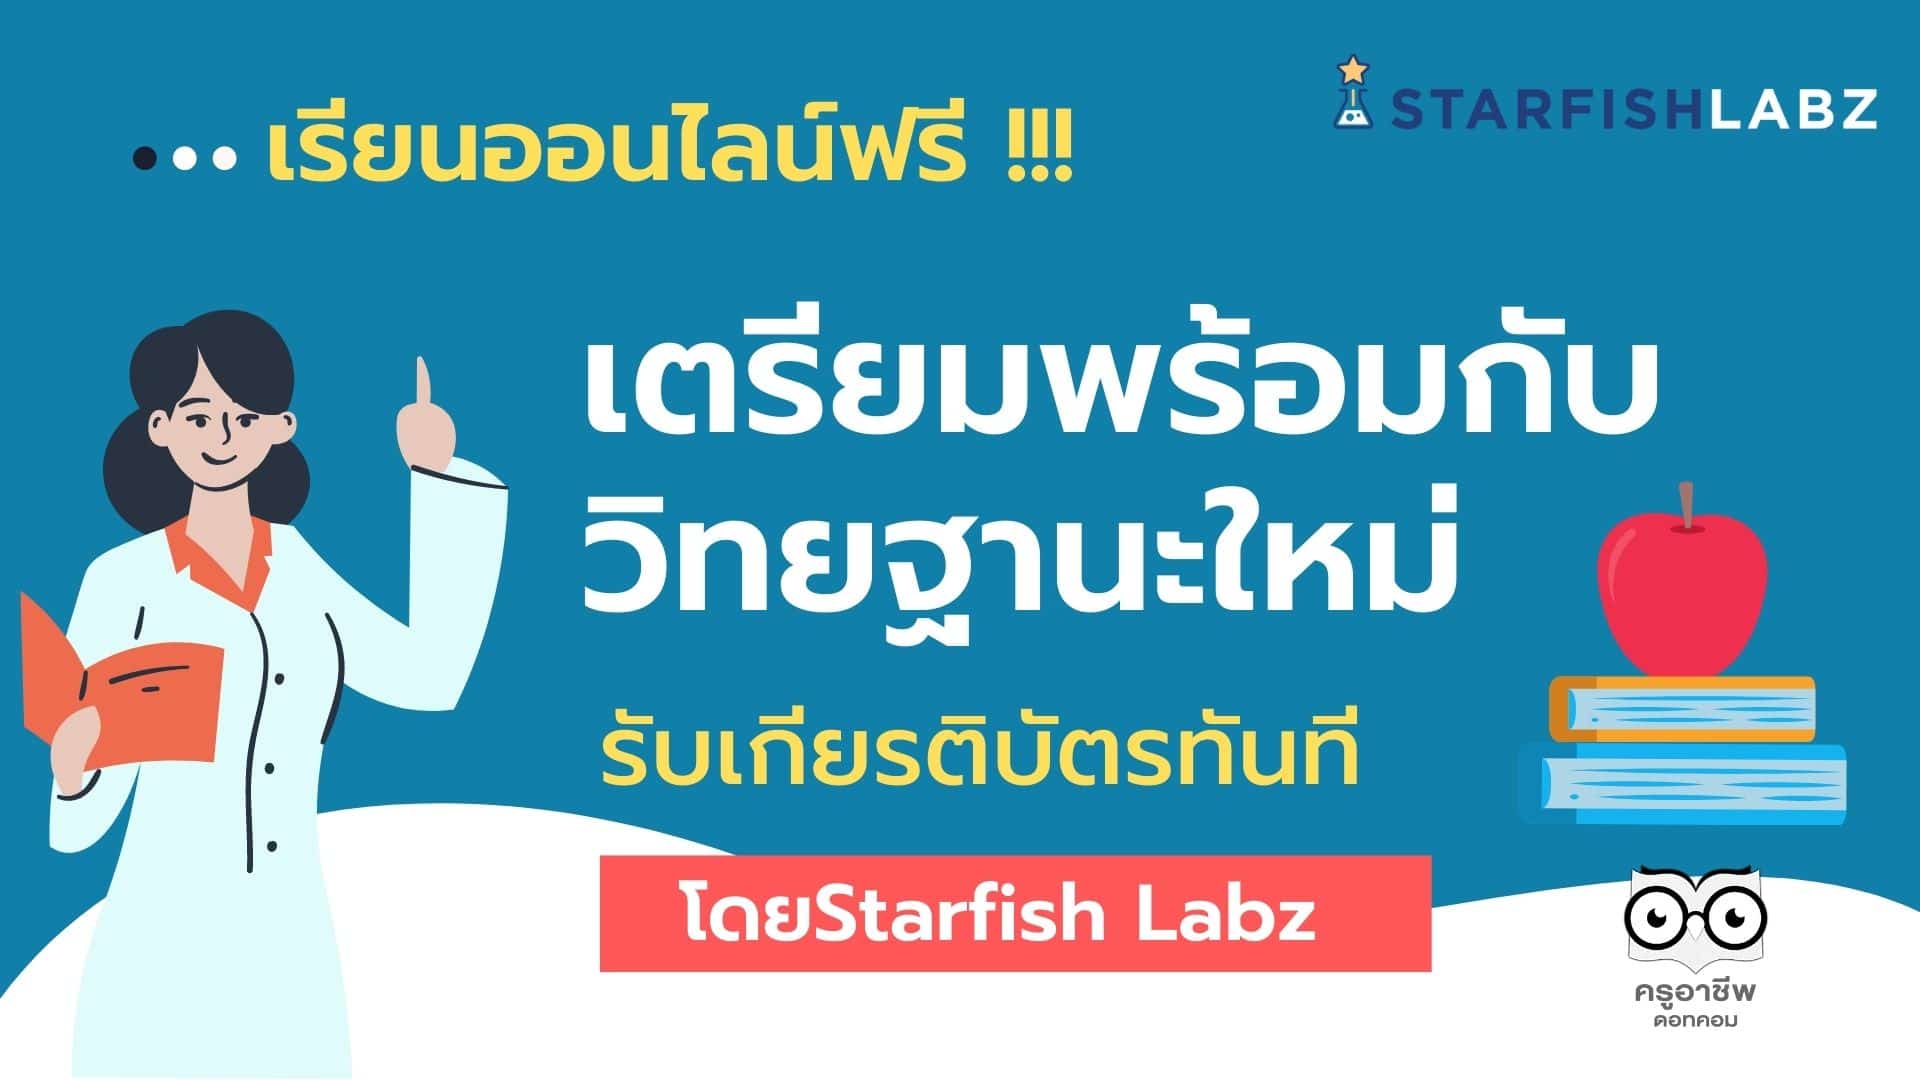 อบรมออนไลน์ฟรี!! เตรียมพร้อมกับวิทยฐานะใหม่ รับเกียรติบัตรออนไลน์ โดยStarfish Labz